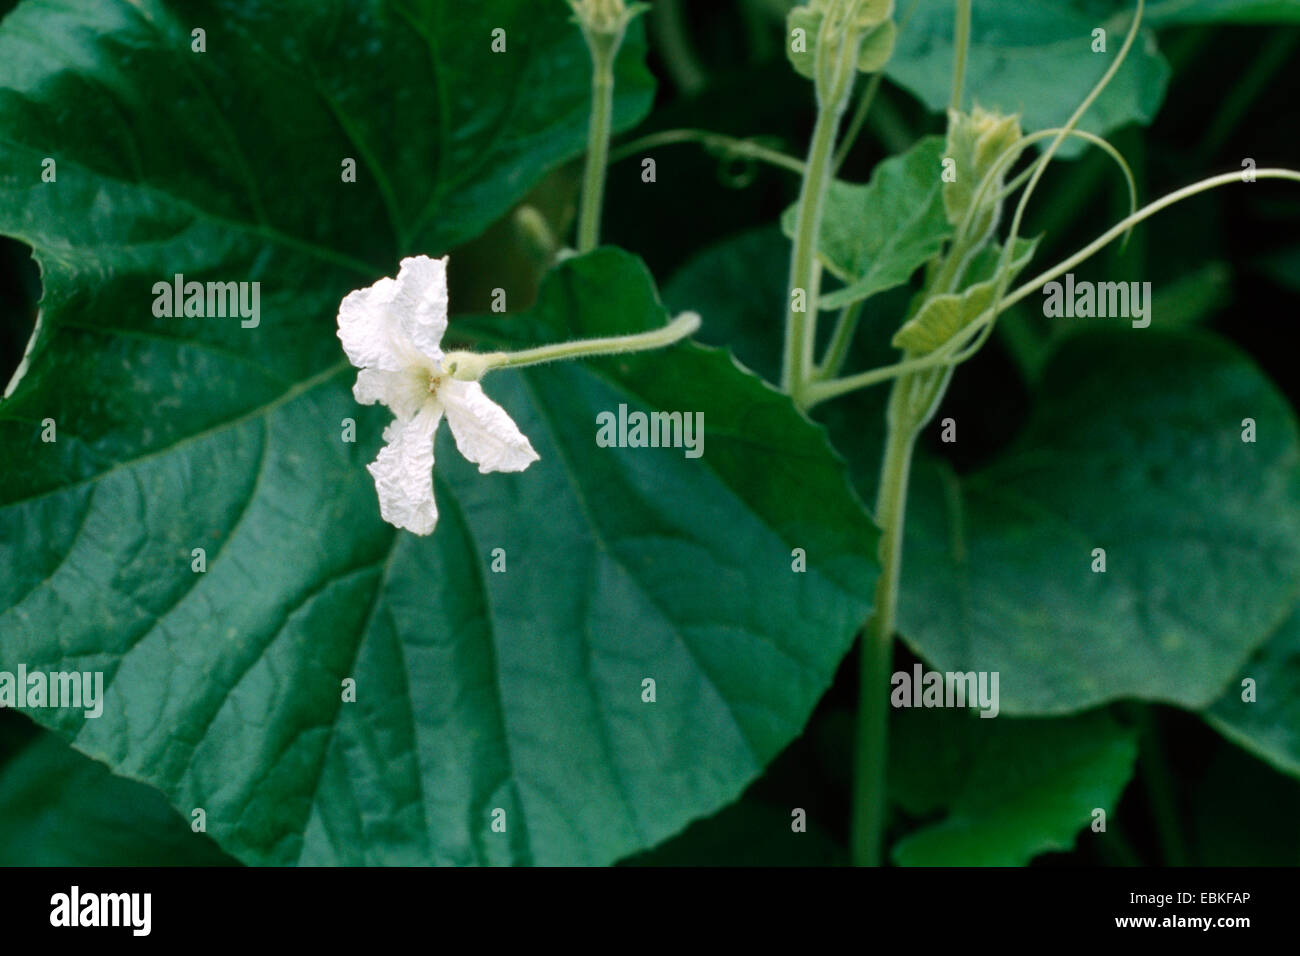 Botella de calabazas, calabaza, calabaza, calabaza blanca flor de calabaza (Lagenaria siceraria), floreciendo Foto de stock